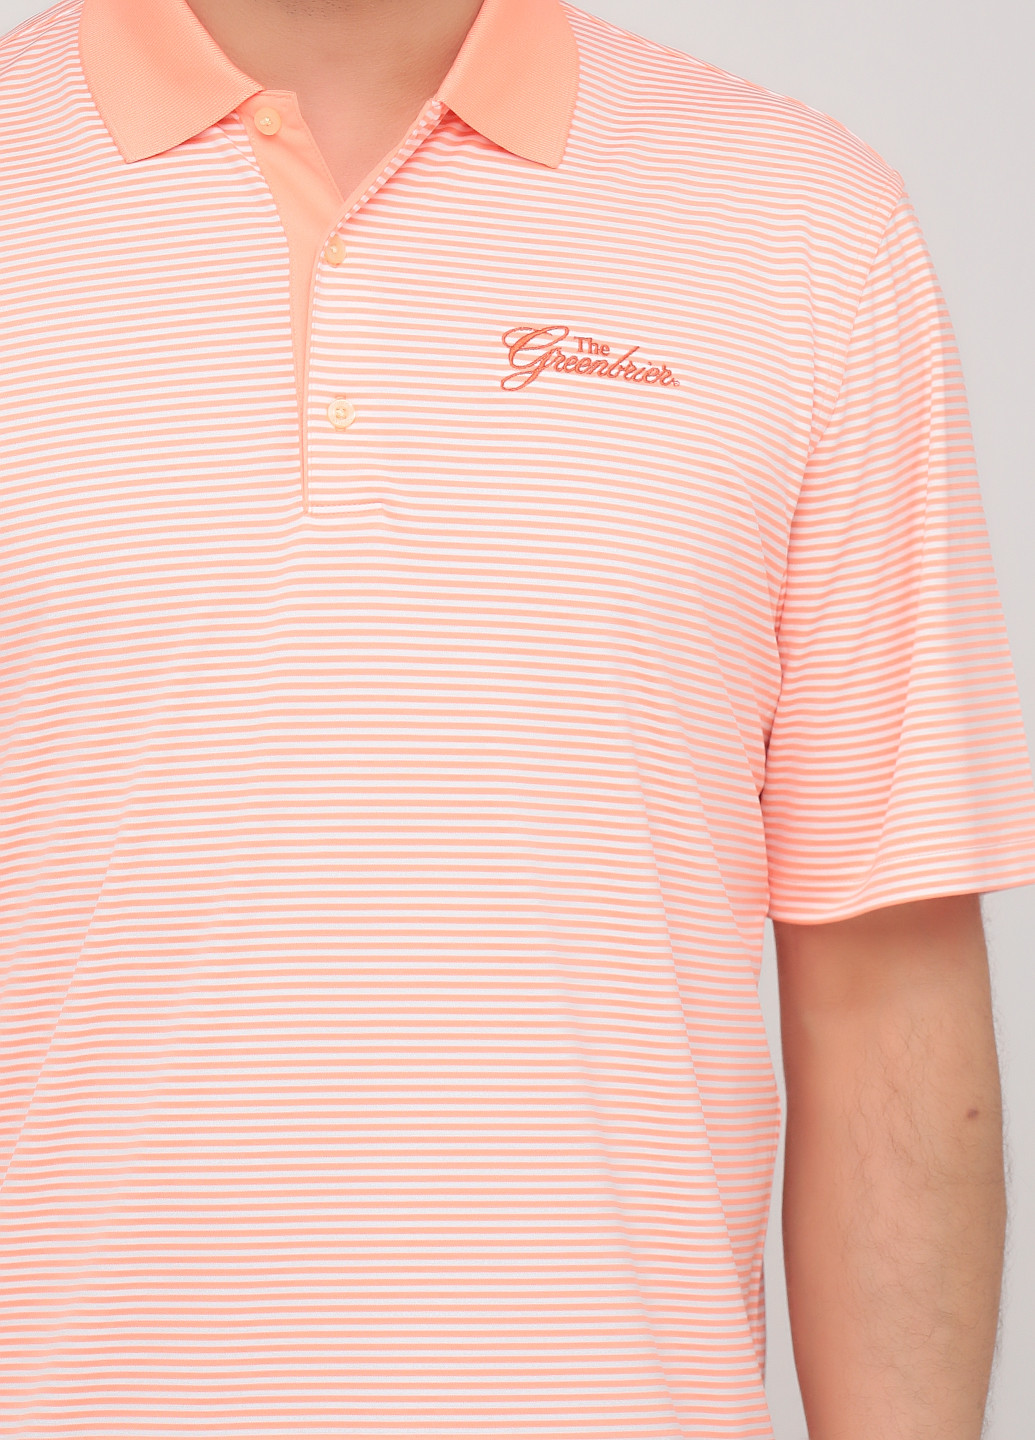 Оранжевая футболка-поло для мужчин Greg Norman в полоску